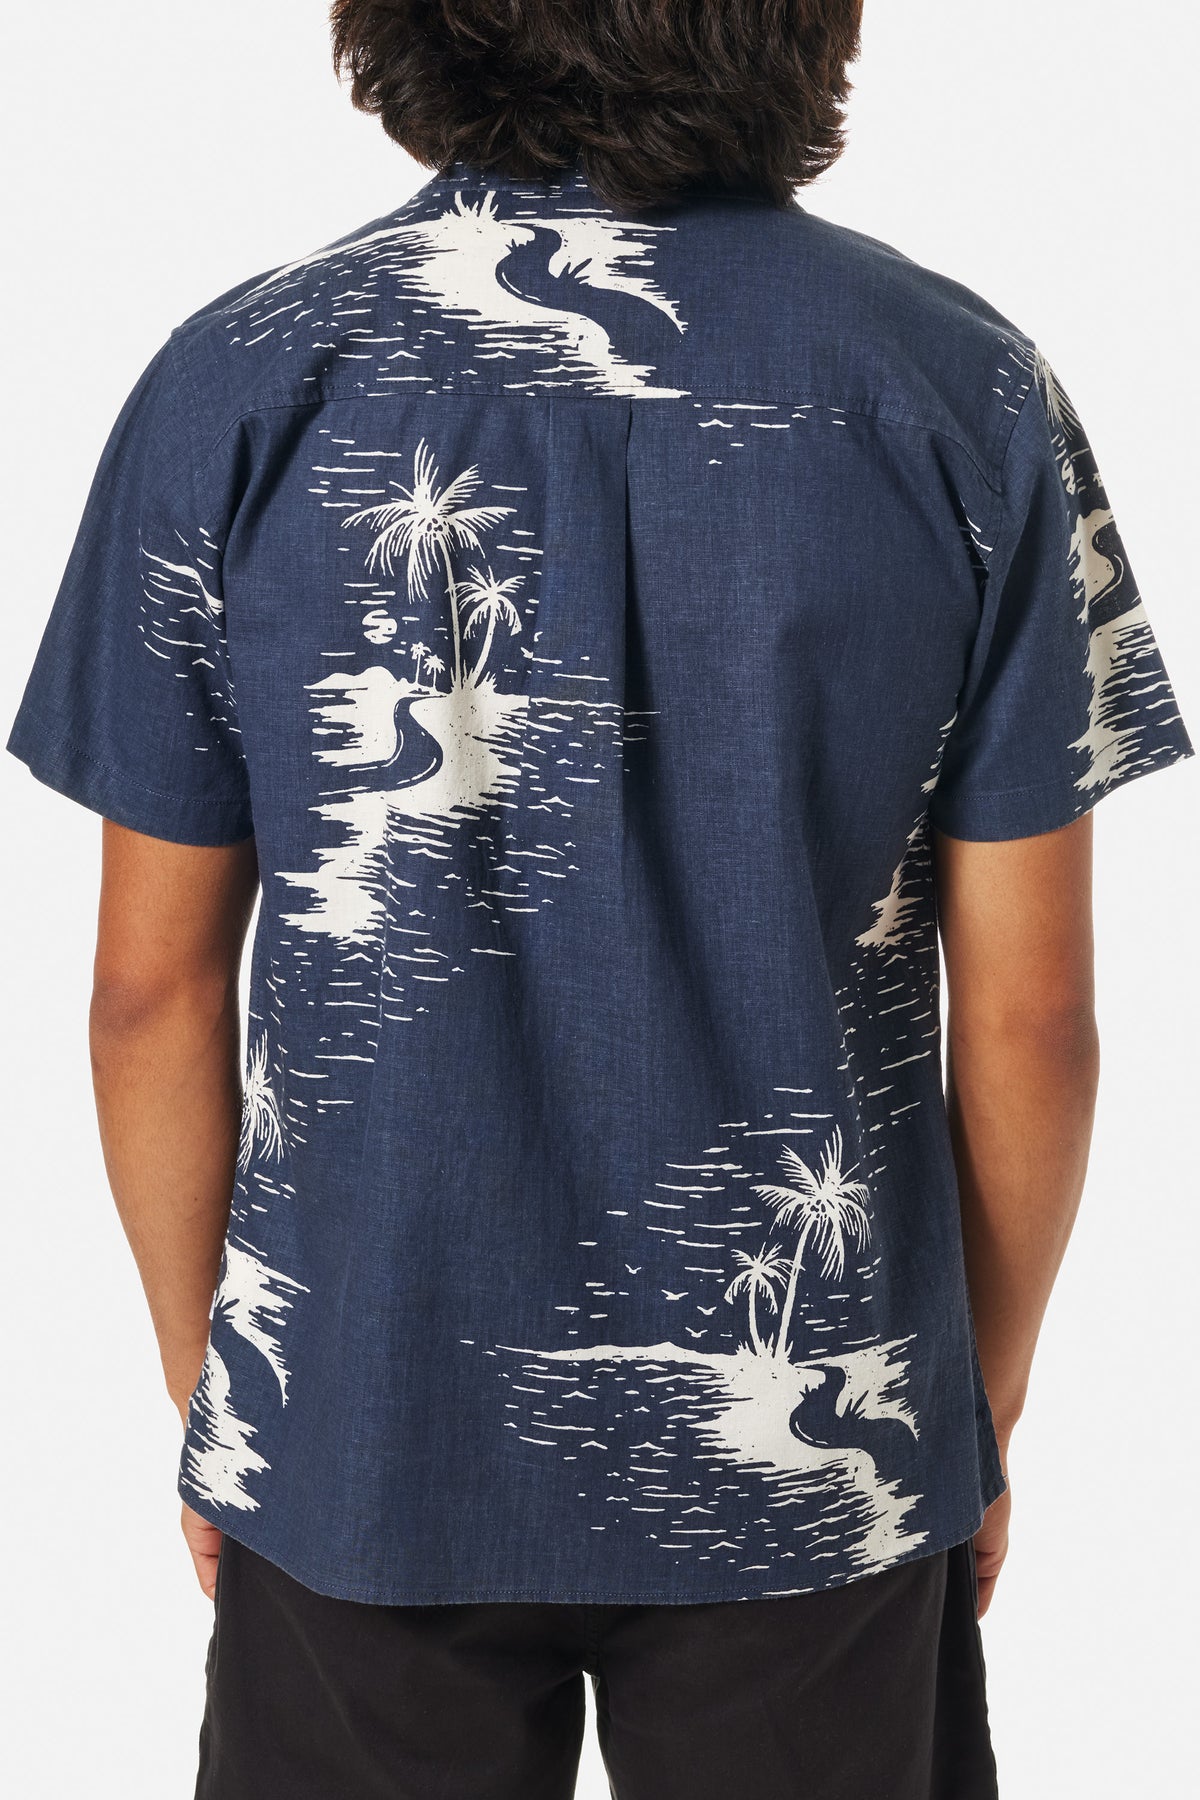 Chemise katin homme au design hawaïen bleu et blanche